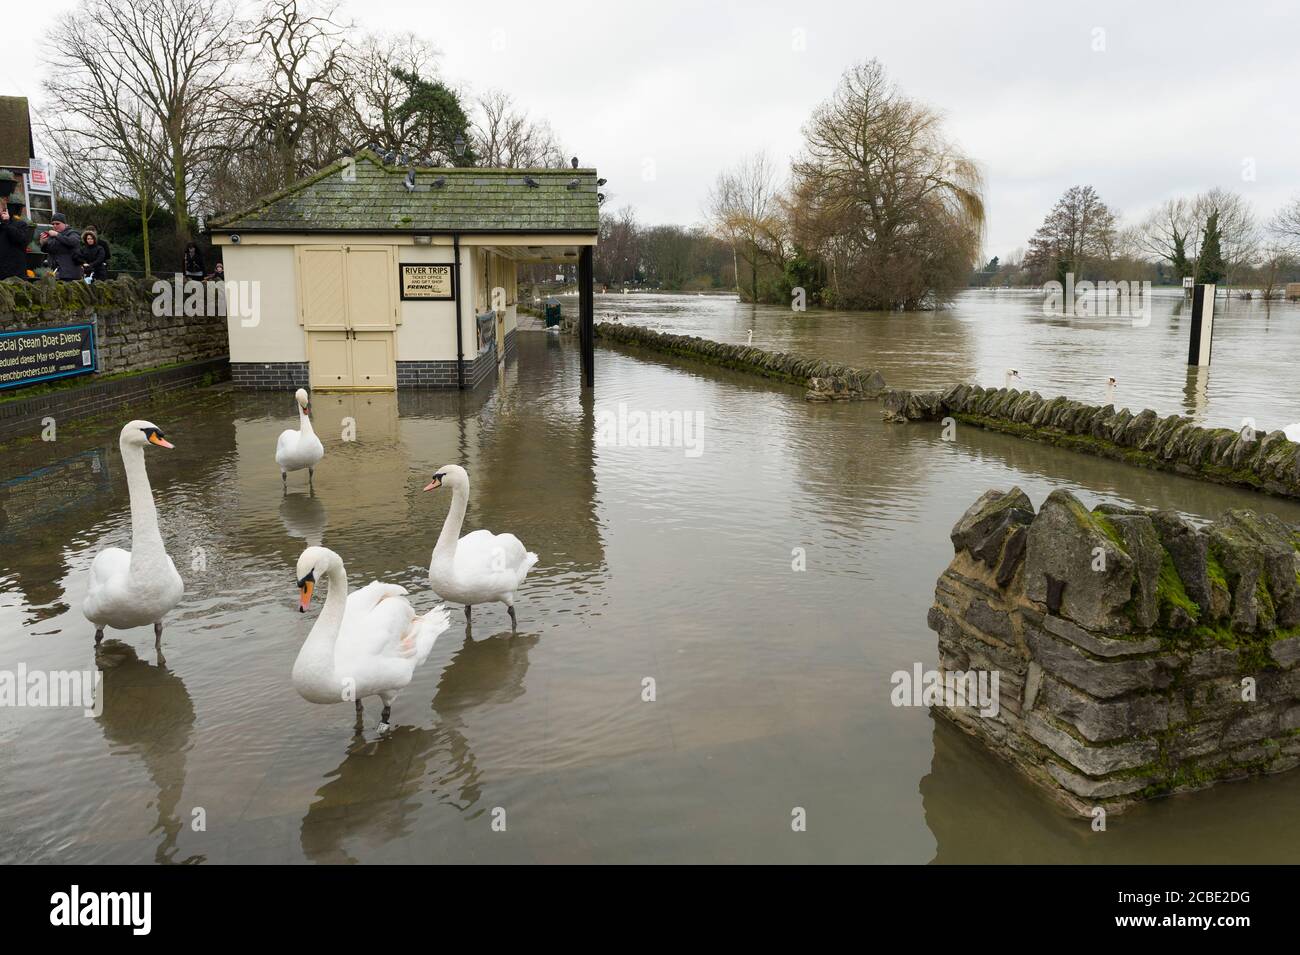 Propriétés inondées sur les rives de la Tamise à Windsor après que la Tamise ait éclaté sur ses rives. Windsor, Berkshire, Royaume-Uni. 10 févr. 2014 Banque D'Images